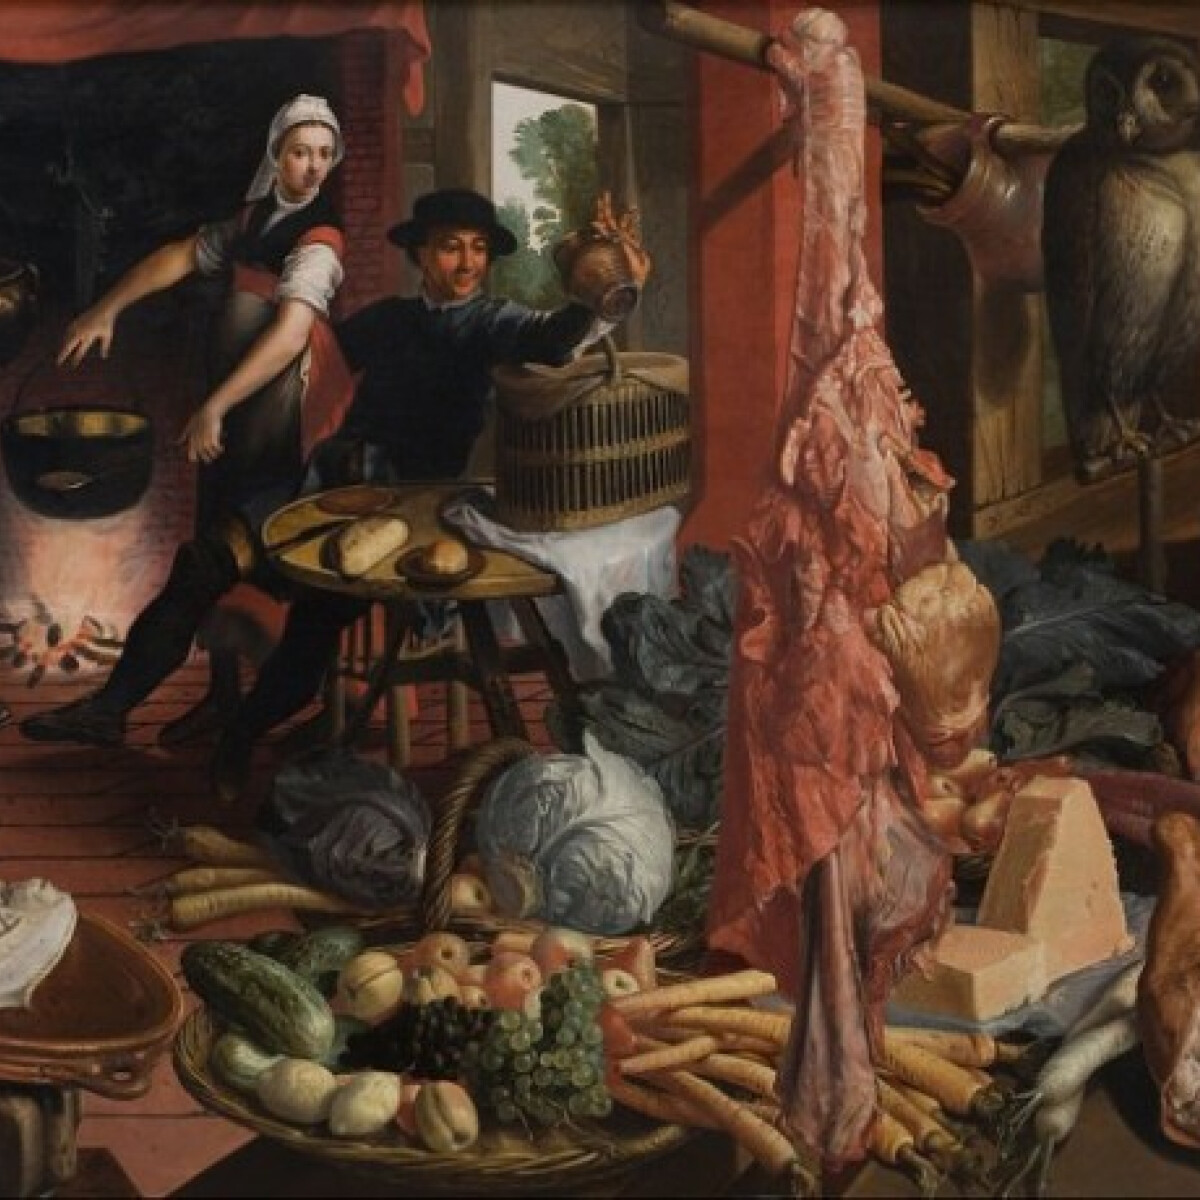 Mértéktelen lakomák és éhezés - Szélsőséges étkezési szokások a középkorban